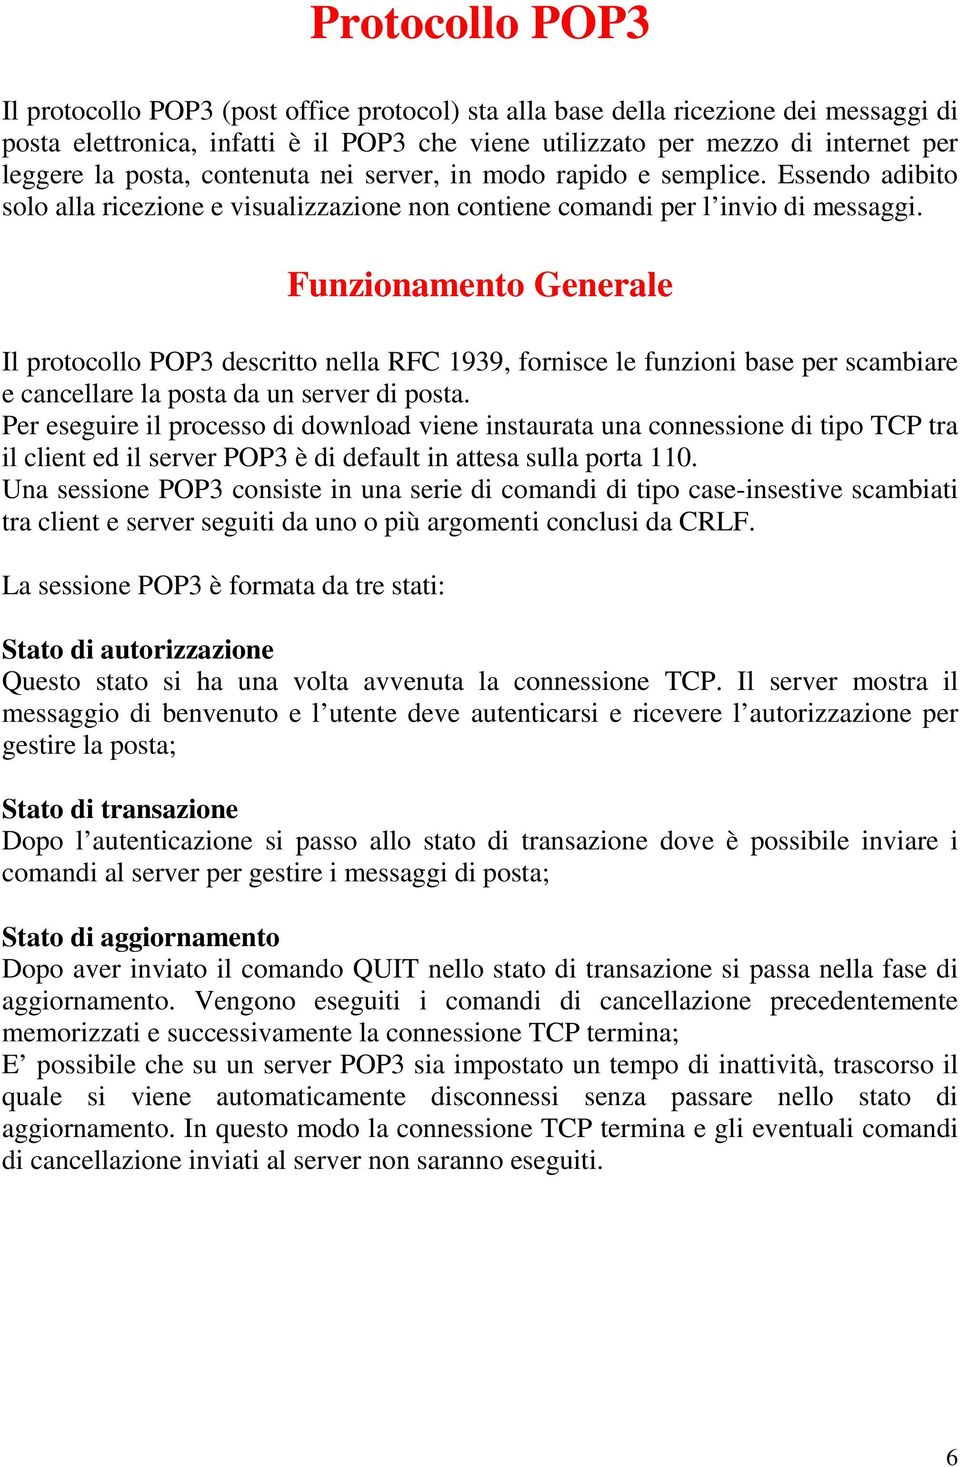 Funzionamento Generale Il protocollo POP3 descritto nella RFC 1939, fornisce le funzioni base per scambiare e cancellare la posta da un server di posta.